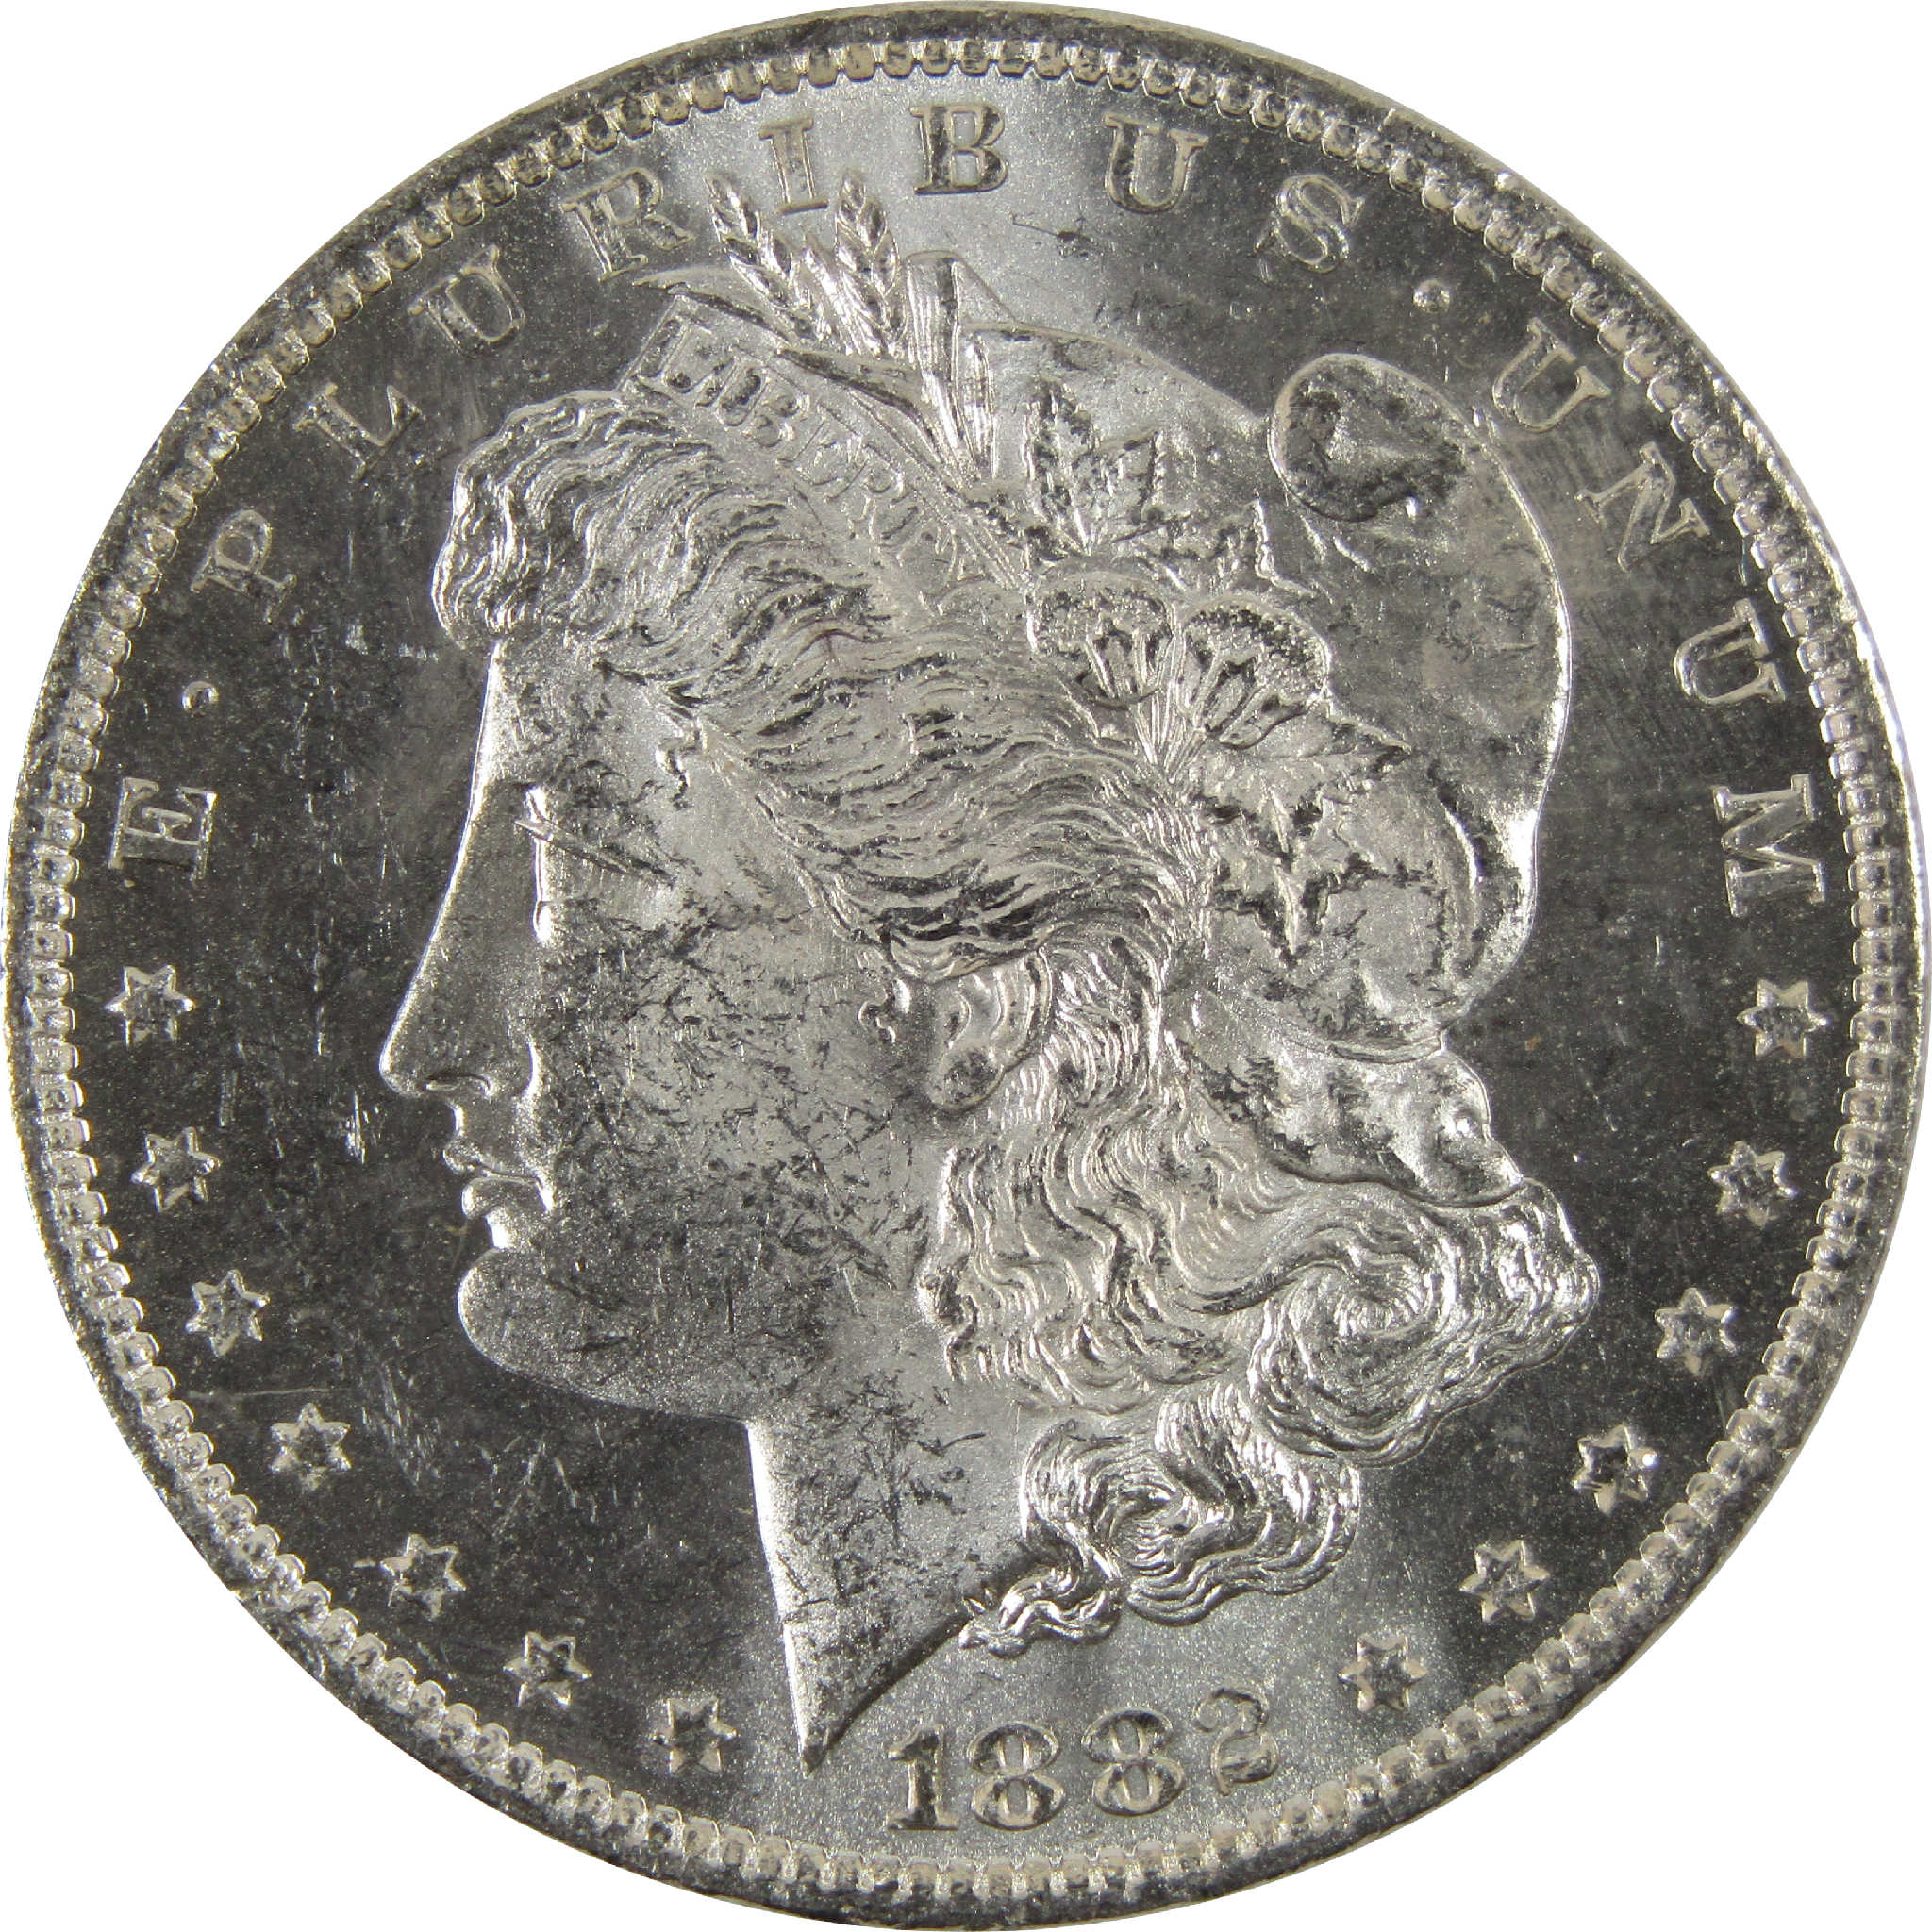 1882 O Morgan Dollar BU Uncirculated 90% Silver $1 Coin SKU:I8920 - Morgan coin - Morgan silver dollar - Morgan silver dollar for sale - Profile Coins &amp; Collectibles